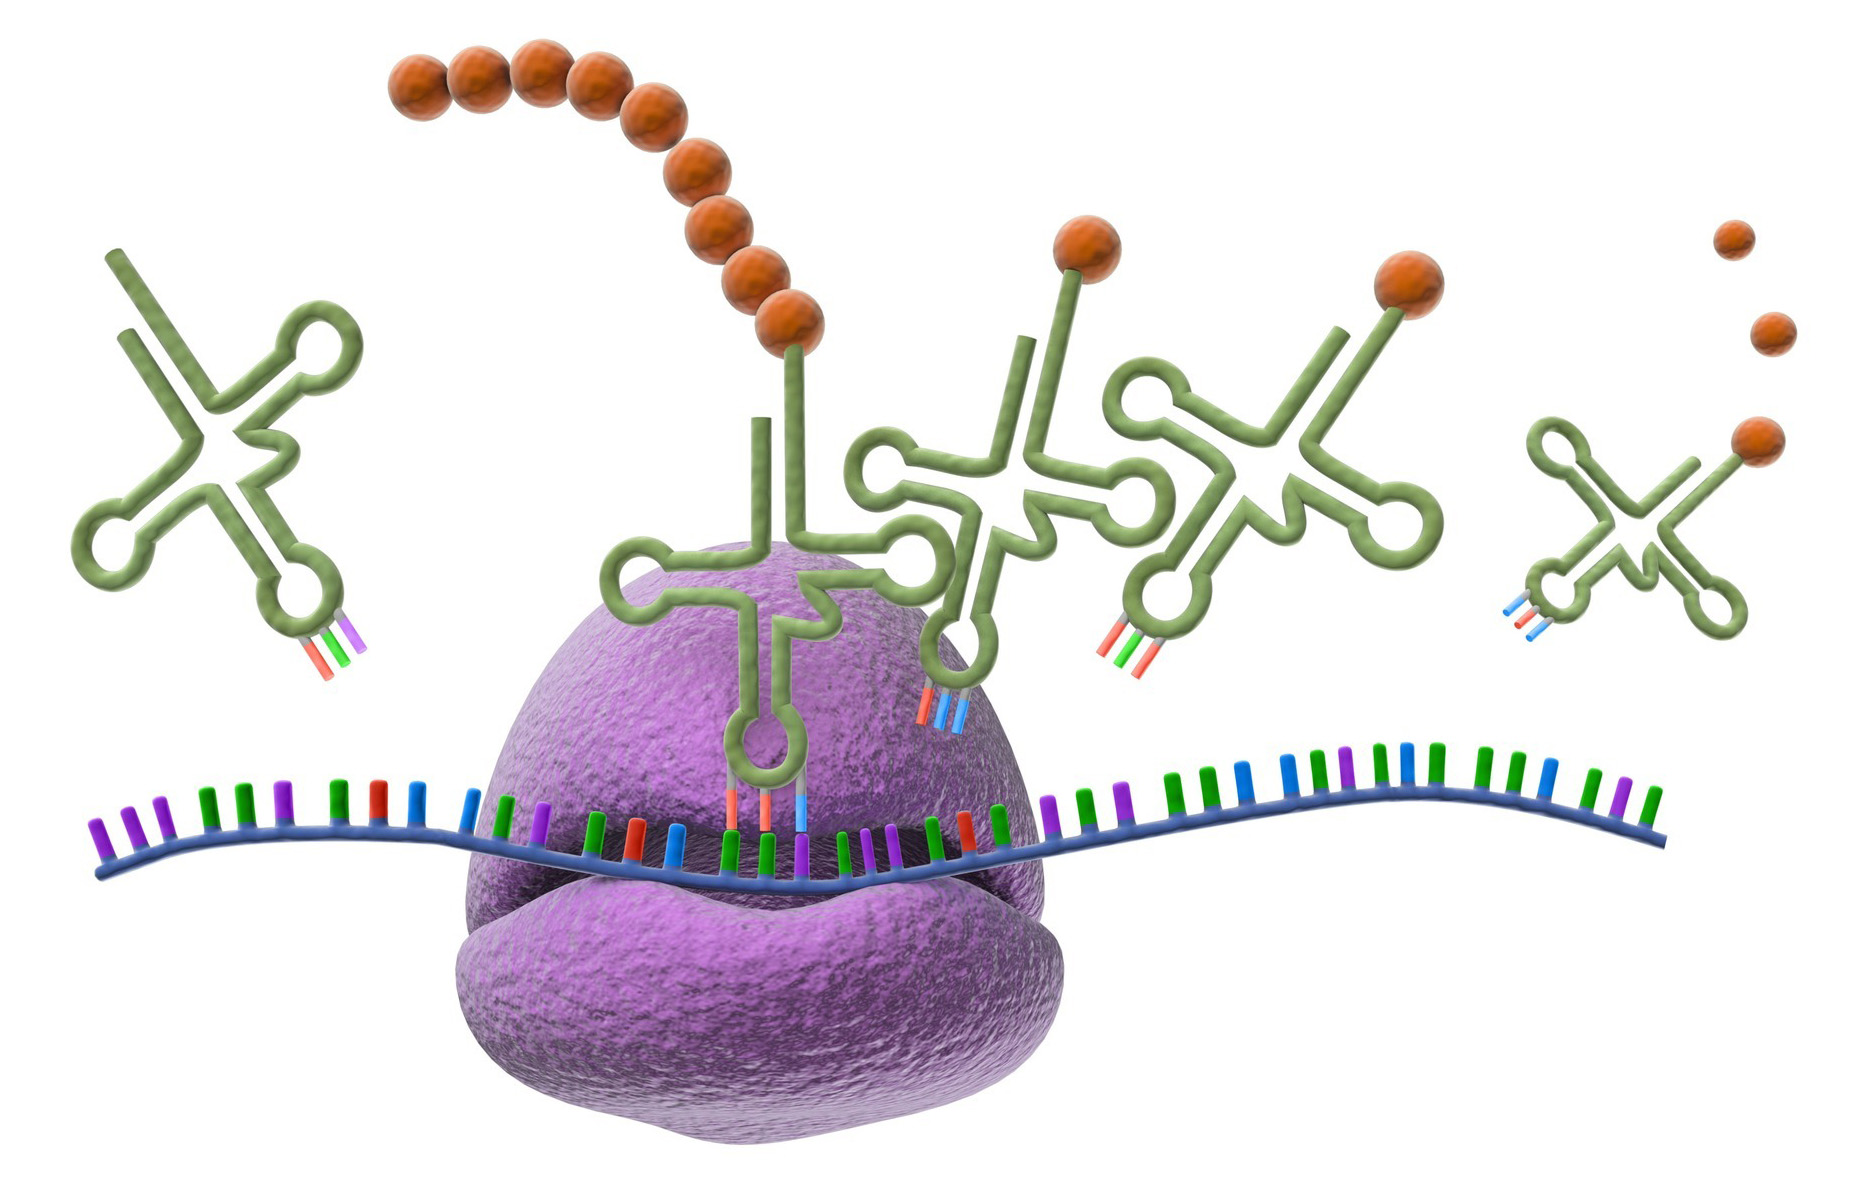 Representación del proceso de traducción genética. Un cordón azul representa la hebra de ARN mensajero, con grupos de tres puntas coloreadas representando los codones, y cada punta es de uno entre cuatro colores: Morado, verde, naranja y azul, representando los diferentes nucleótidos. Una forma grande, redondeada y morada representa al ribosoma. Lazos verdes con tres bucles representan el ARN transferente, que incluyen una bola naranja en un extremo que representa el aminoácido, y tres puntas de colores como las anteriores que representan el anticodón.